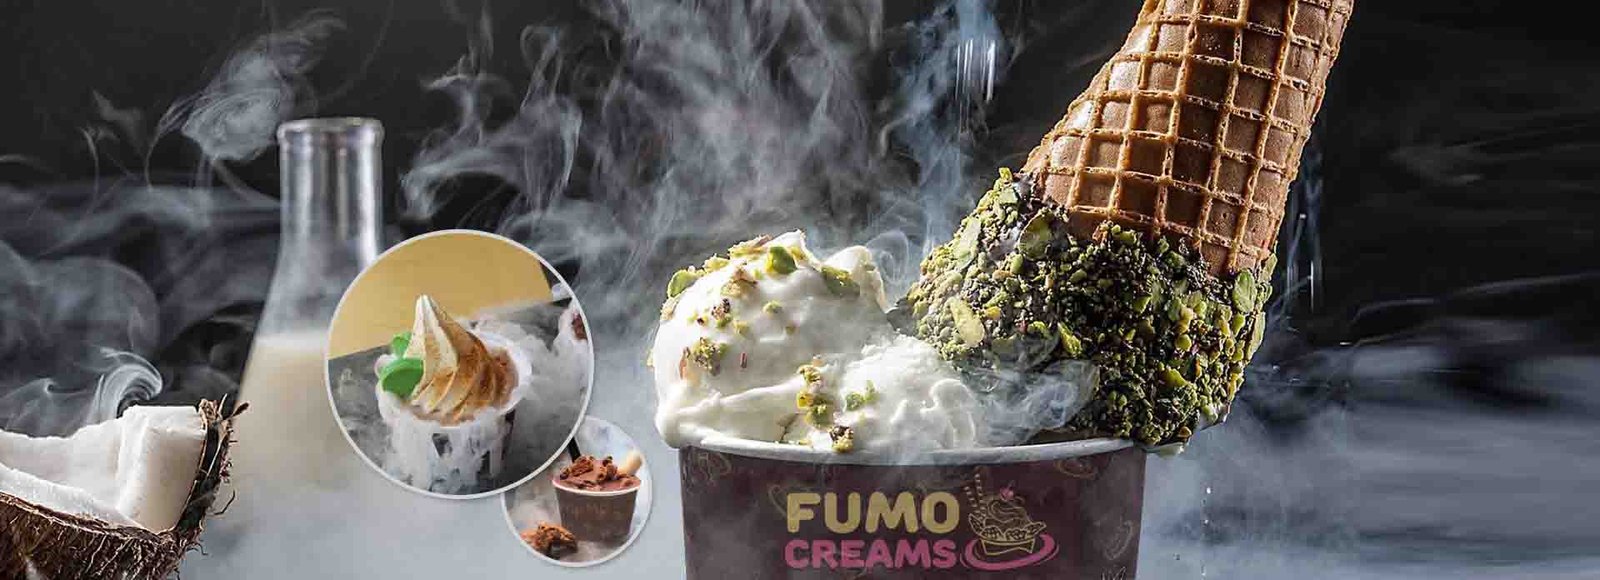 fumo-creams-ice-cream-parlour-gurgaon